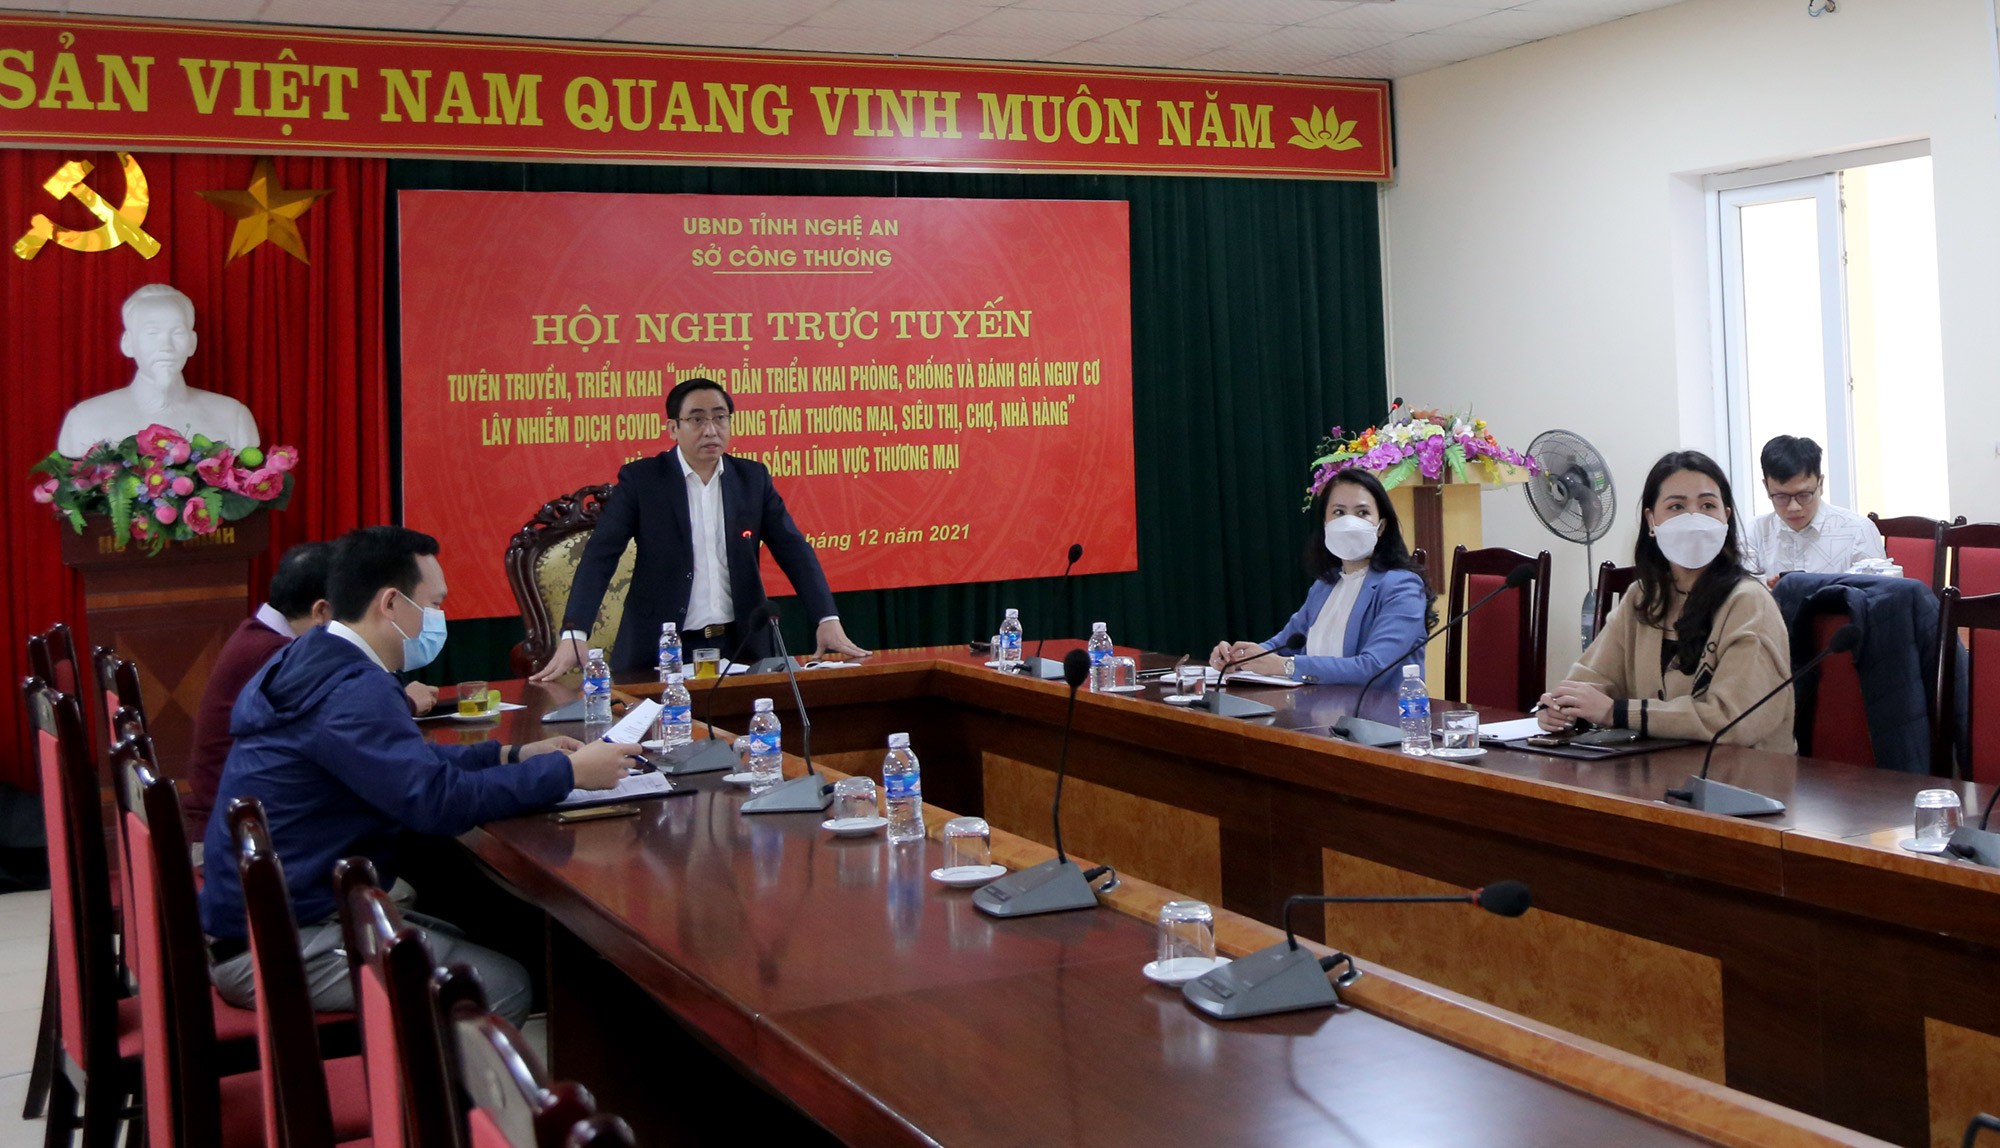 Phó giám đốc Sở Công thương Cao Minh Tú phát biểu chỉ đạo tại hội nghị trực tuyến. Ảnh TH